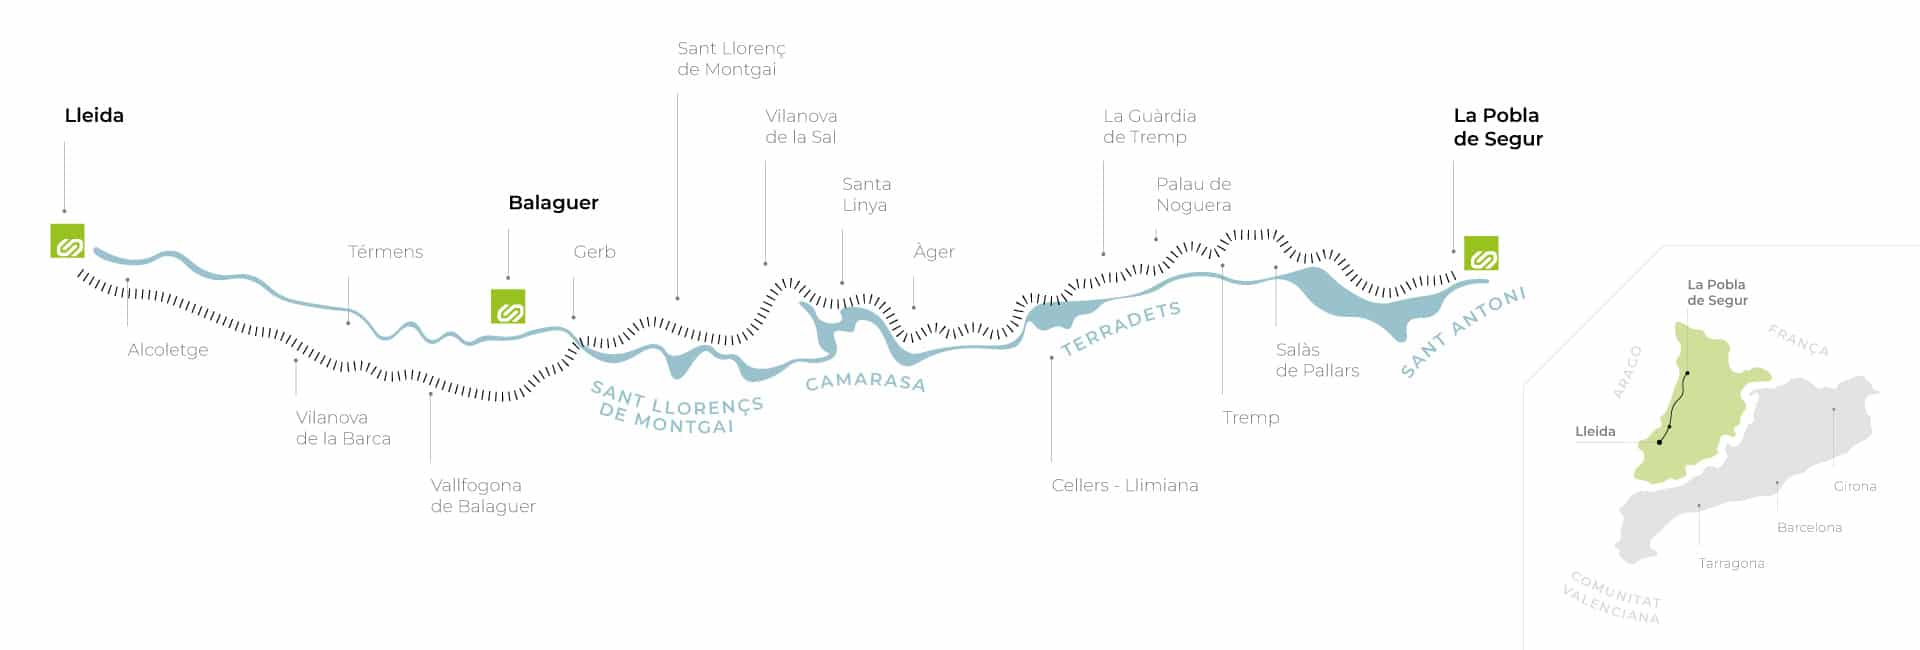 Mapa del recorrido que realiza el Tren dels Llacs. WEB DEL TREN DELS LLACS.